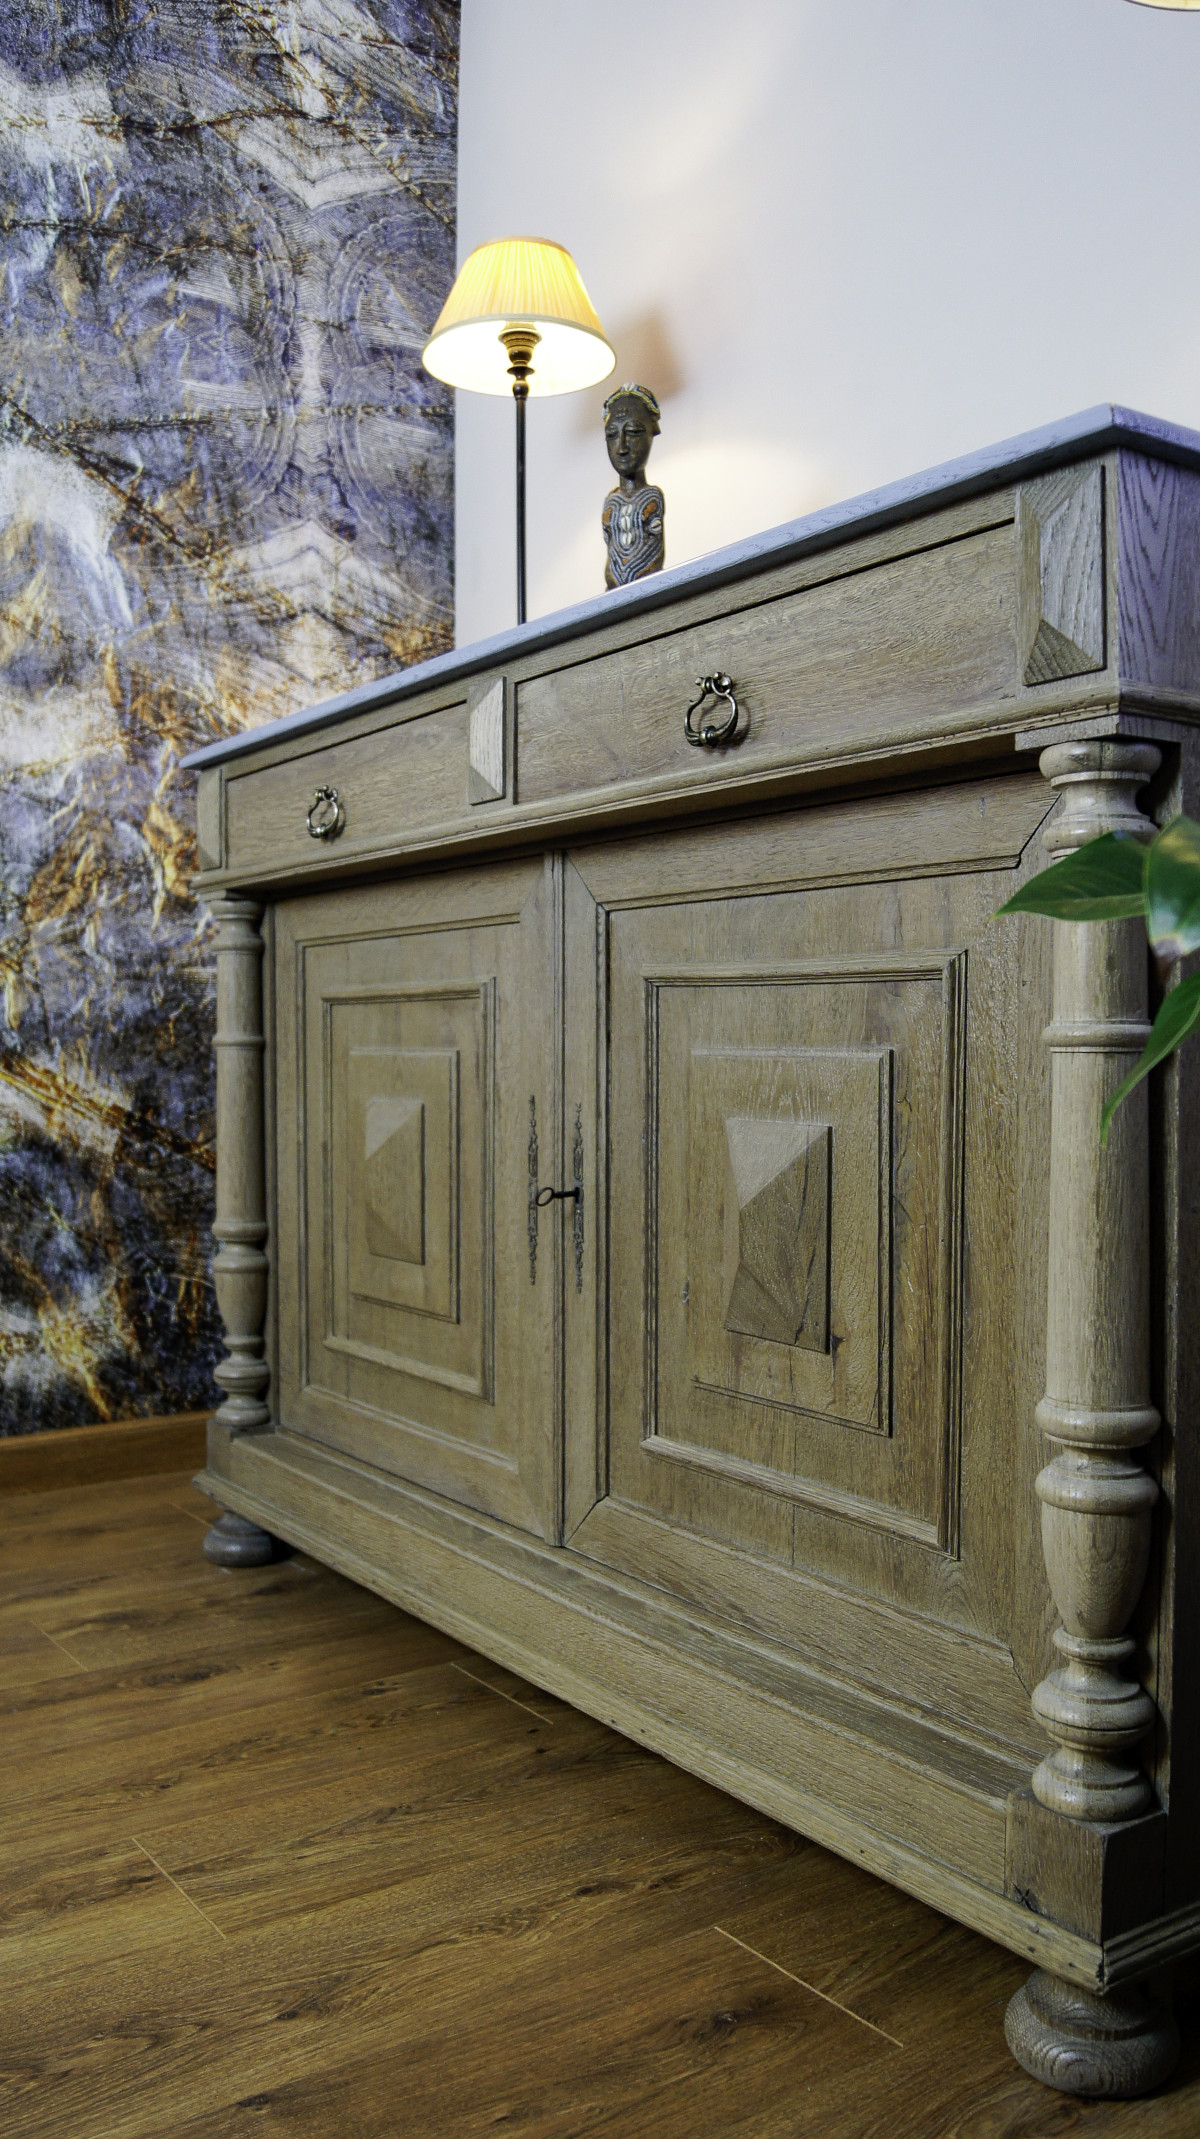 Décoration d'intérieur, papier peint, chaux, acier corten et relooking de meuble . Graulhet 81 Tarn.